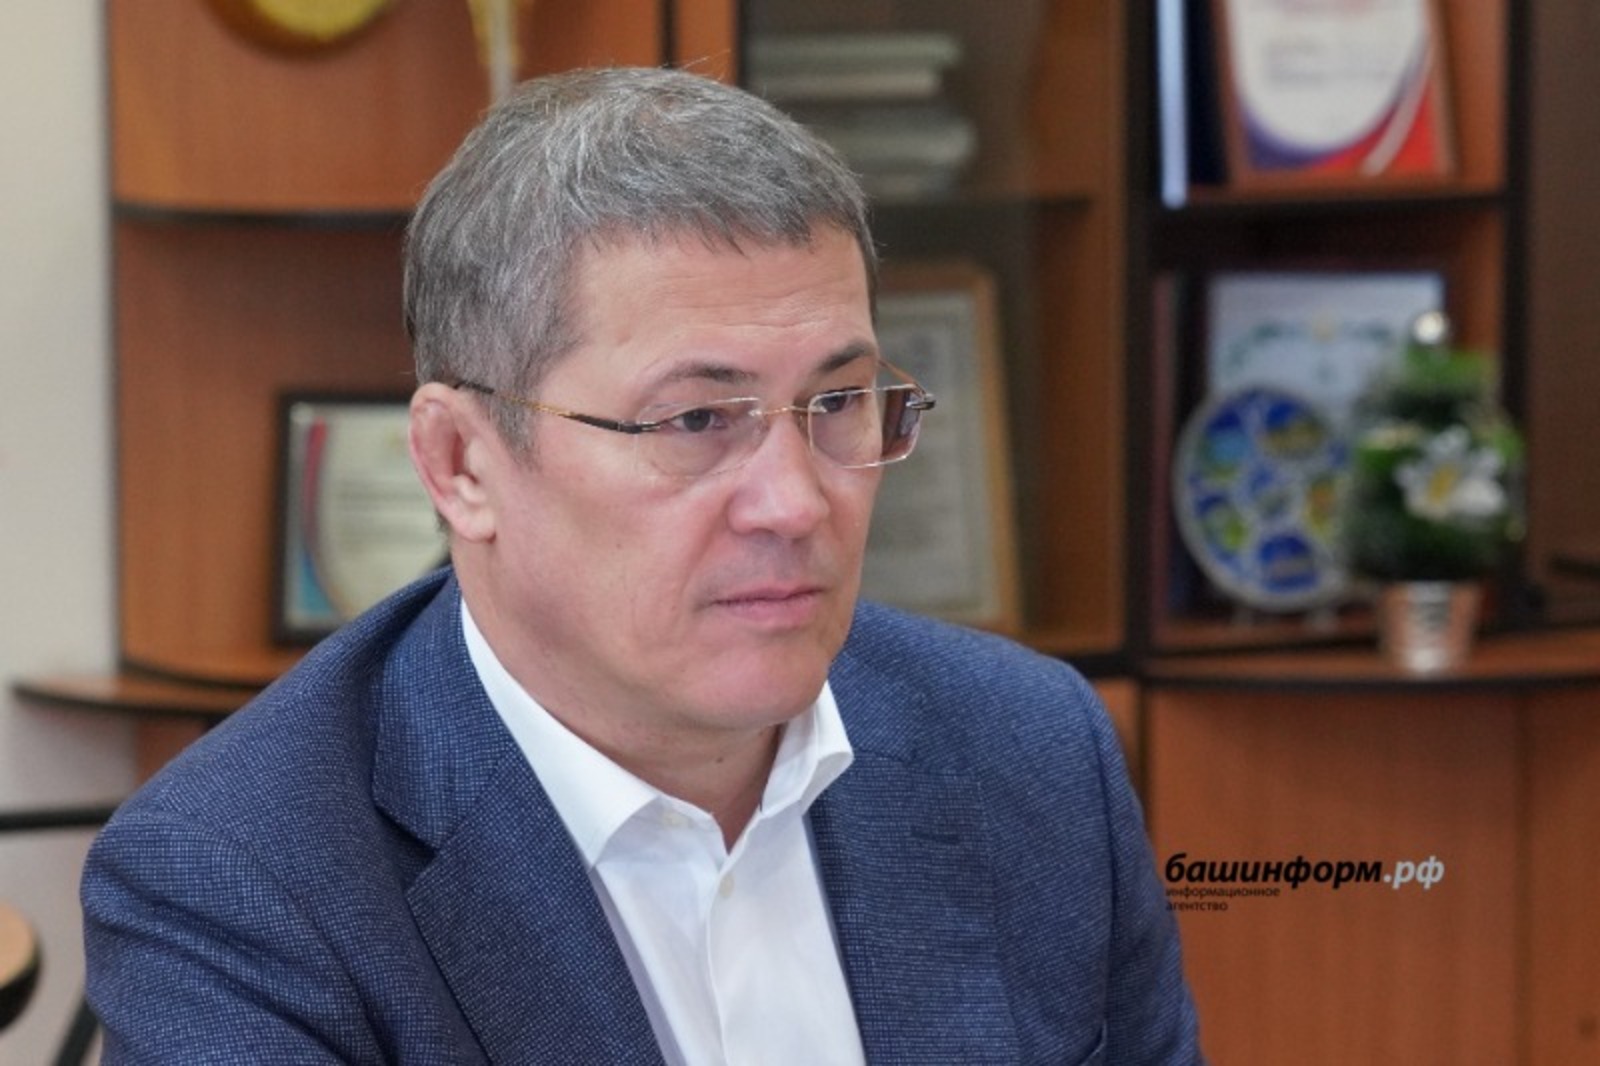 Глава Башкирии Радий Хабиров заявил, что меры поддержки семей участников СВО рассчитаны на длительный период